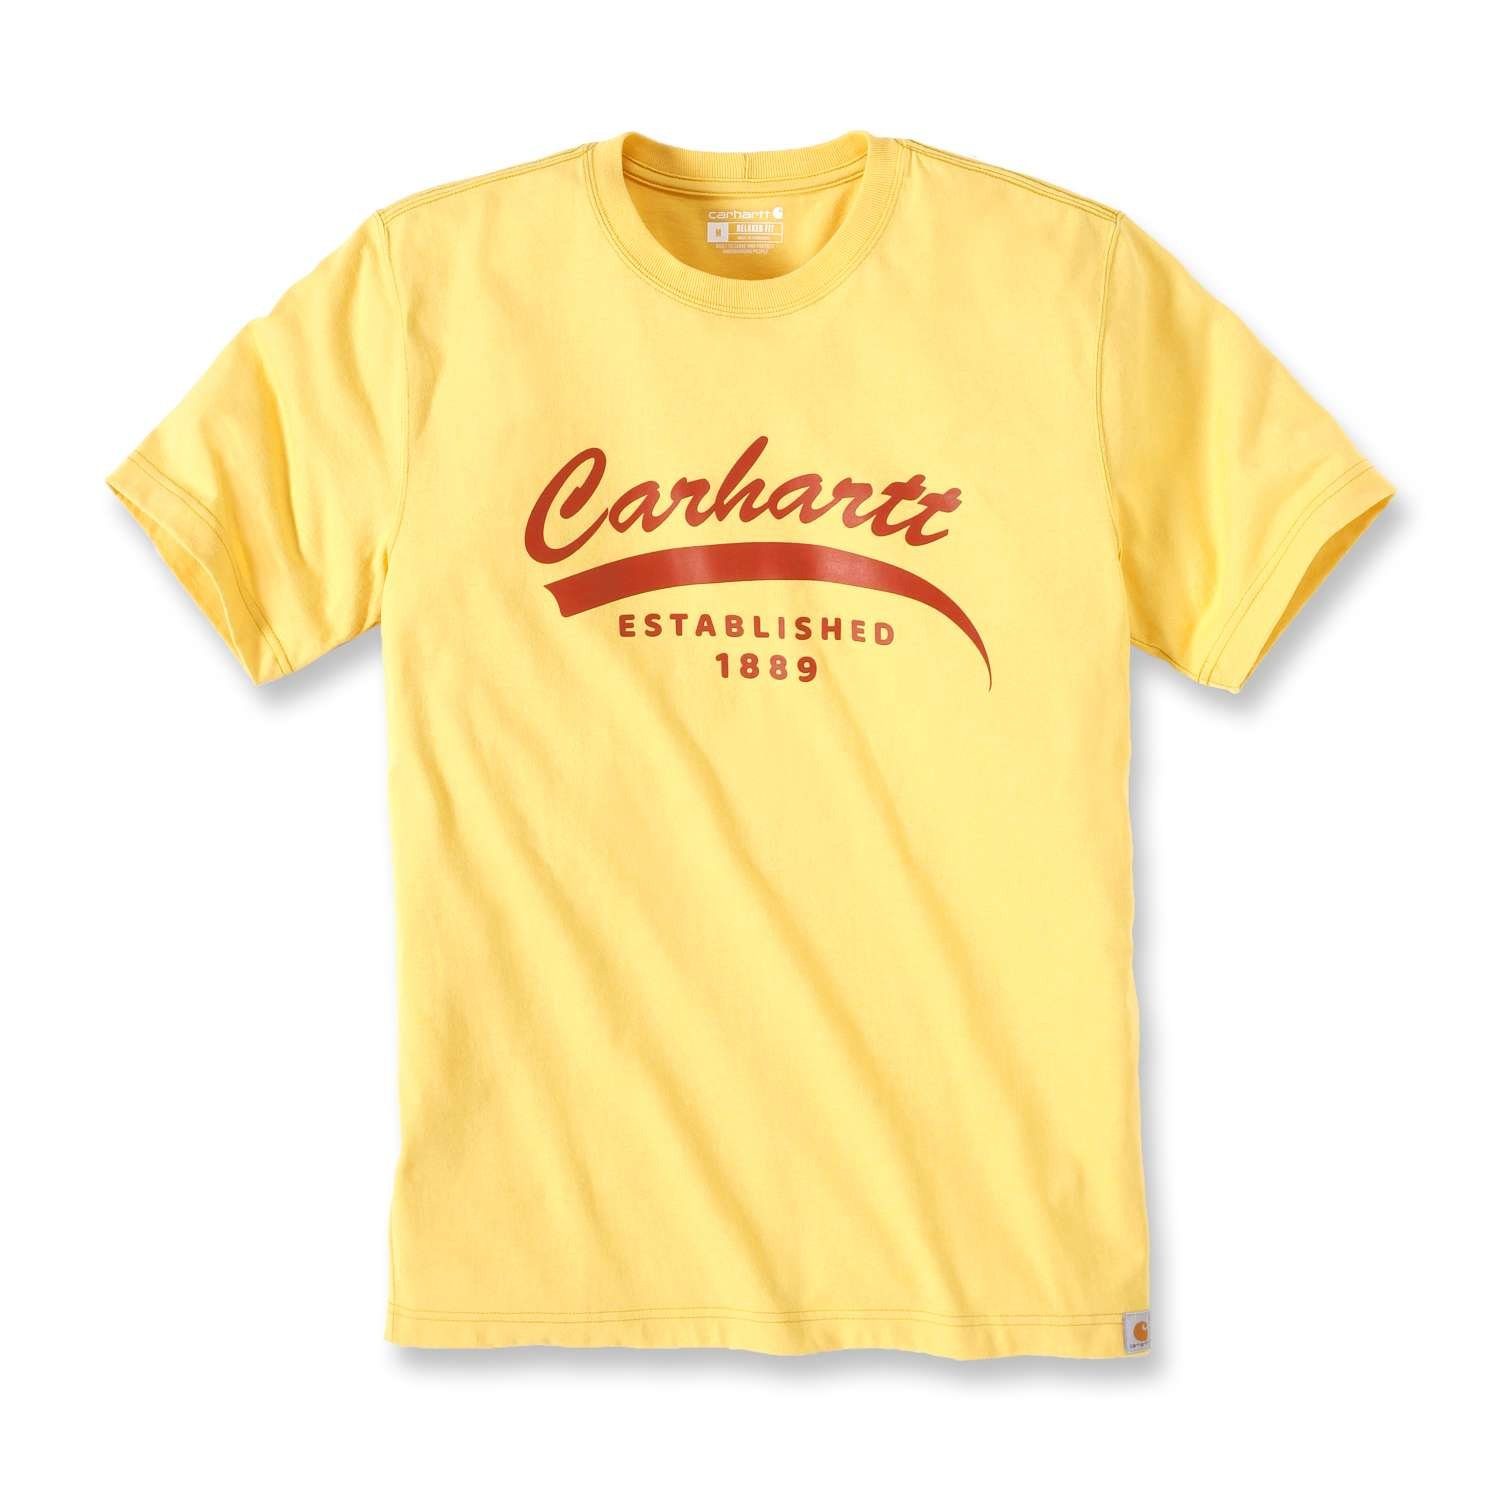 heather Adult Herren T-Shirt S/S Carhartt sundance Carhartt Heavyweight T-Shirt Graphic